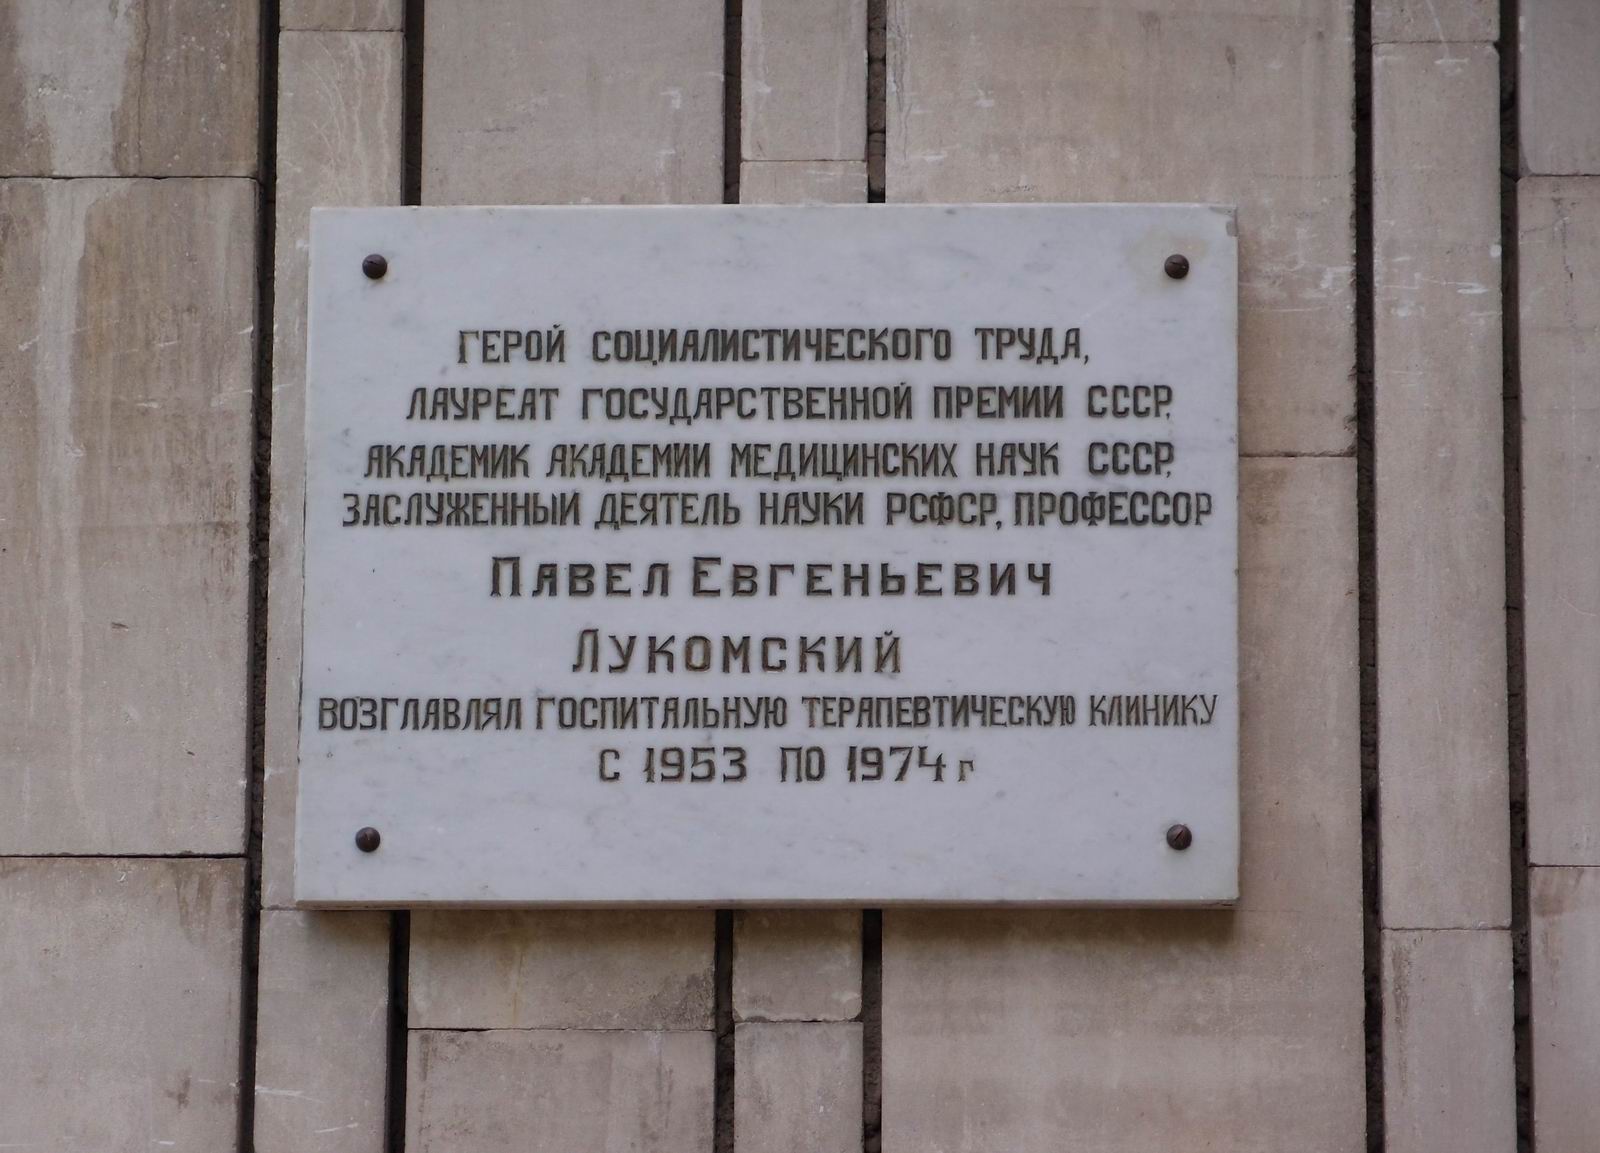 Мемориальная доска Лукомскому П.Е. (1899–1974), на улице Достоевского, дом 31, корпус 1.